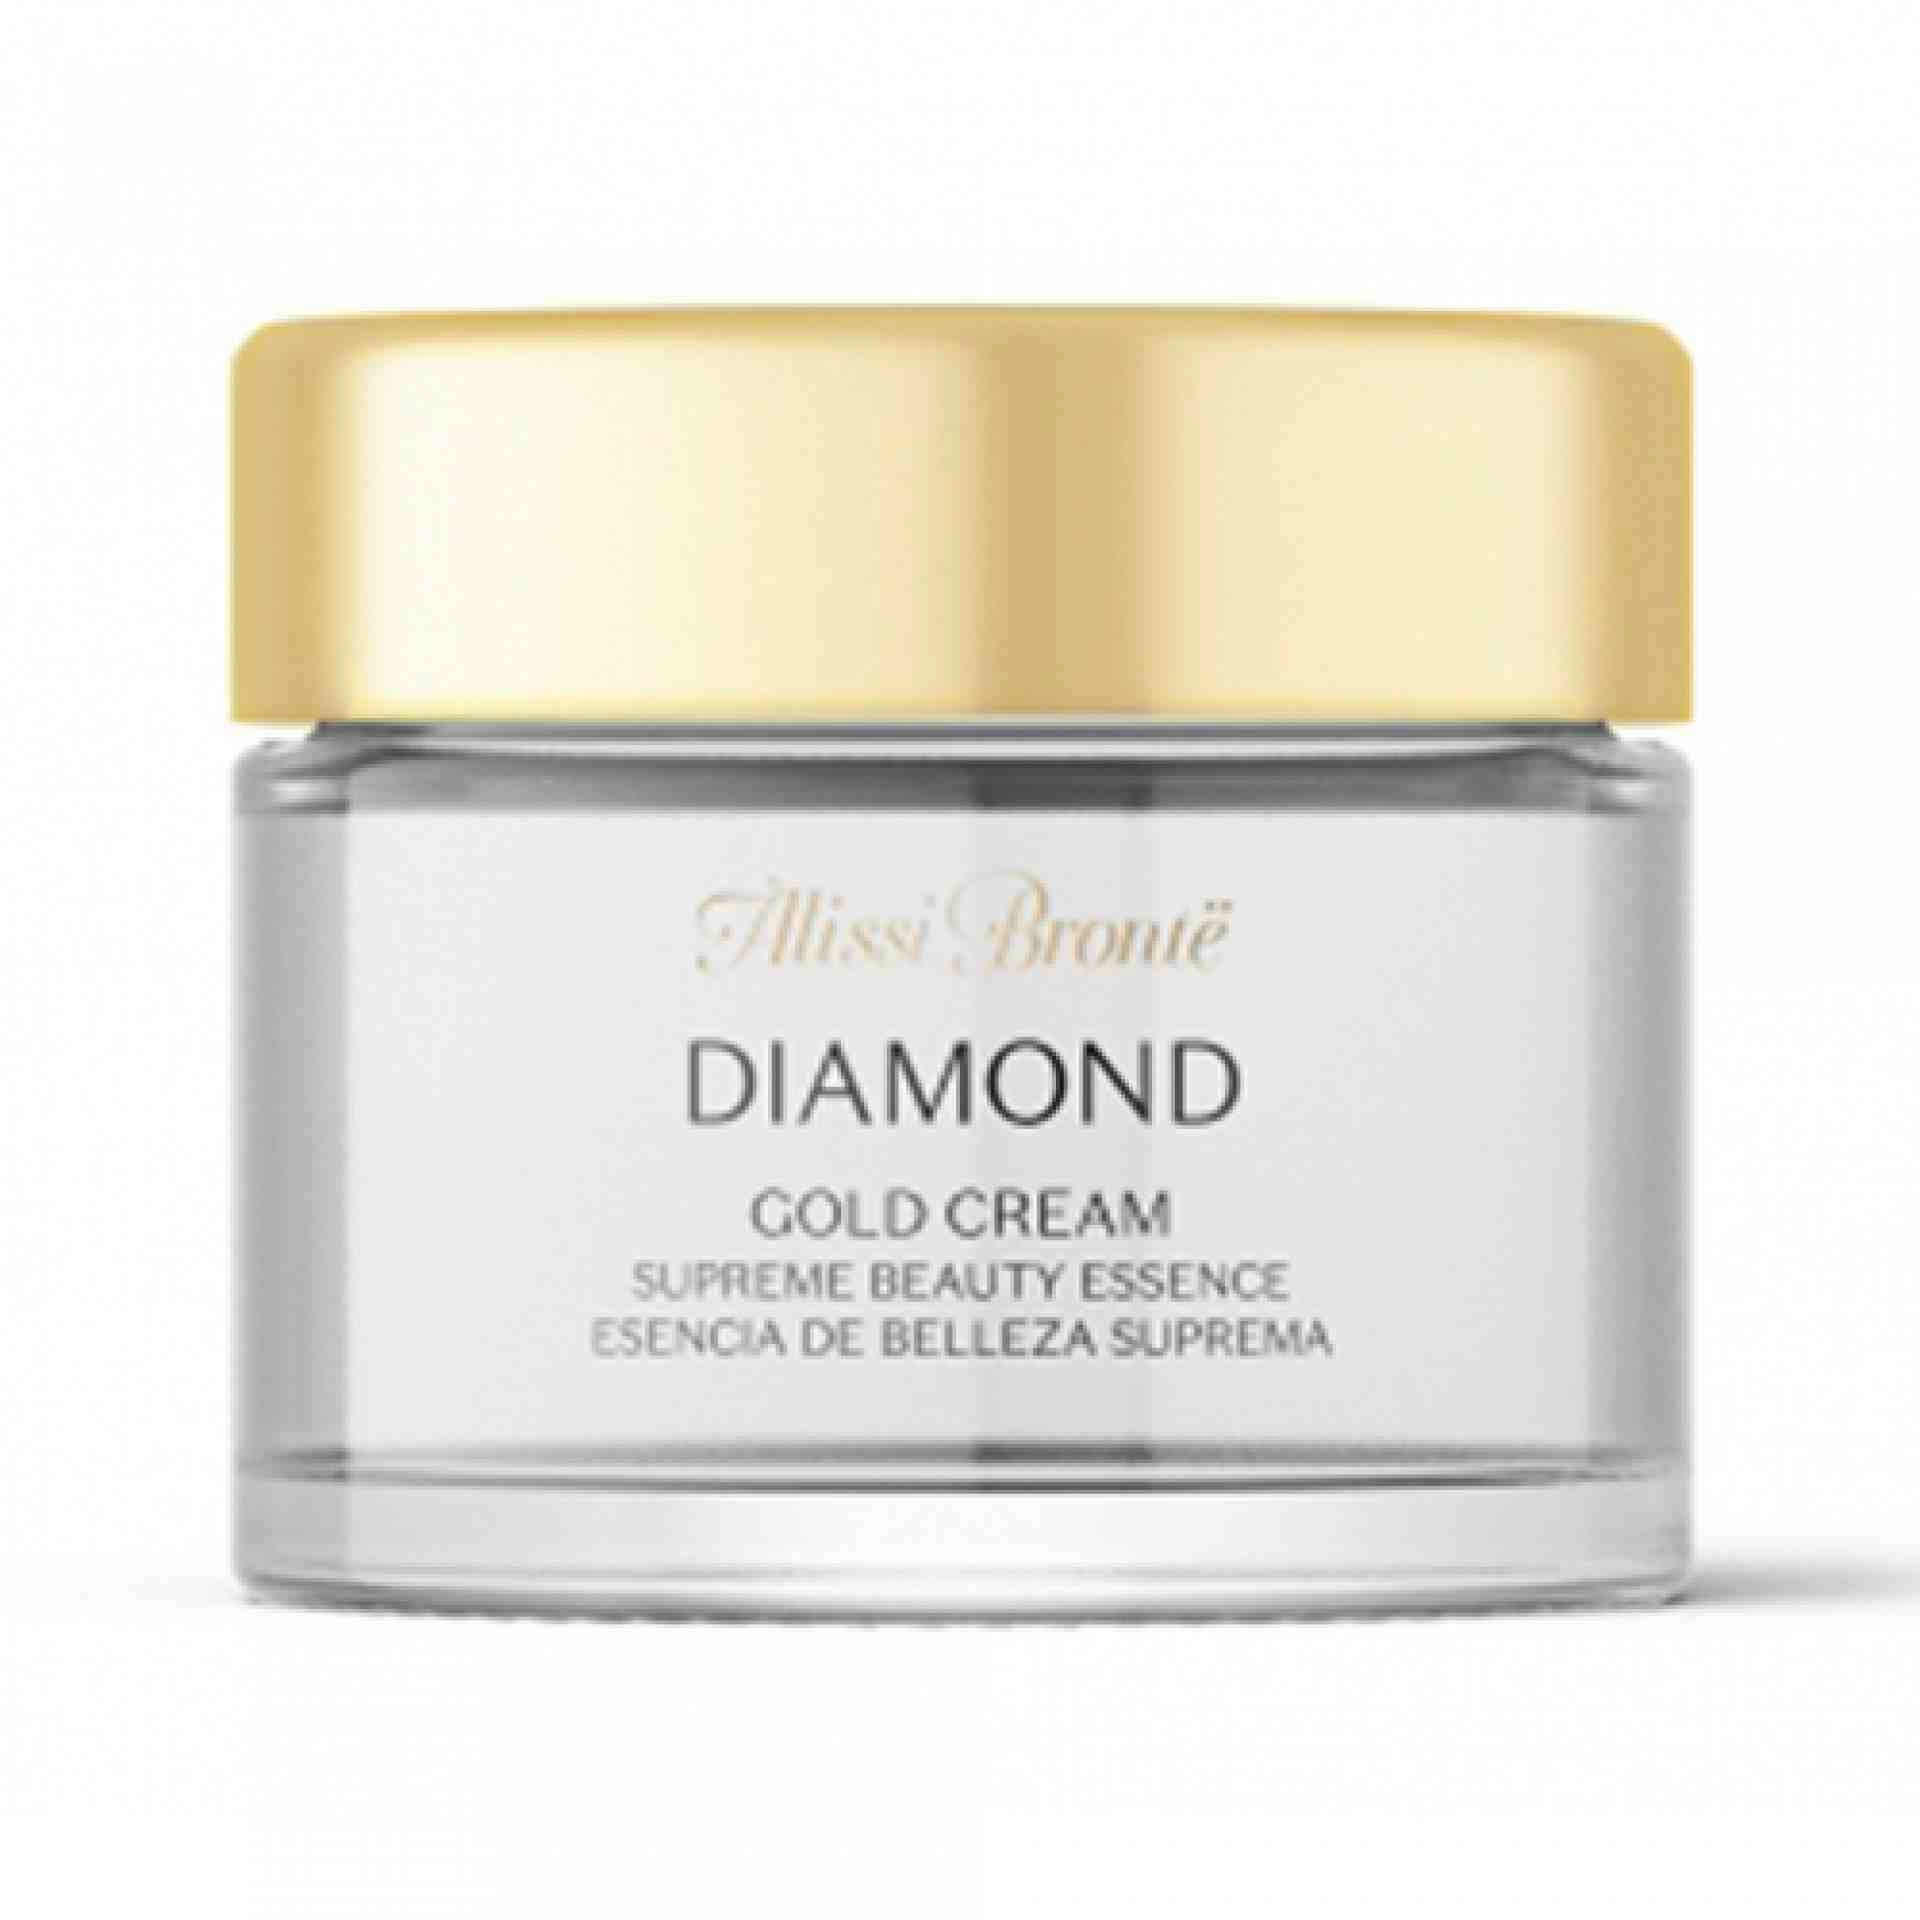 Diamond Gold Cream I Crema de belleza suprema 50ml - Diamond Gold - Alissi Brontë ®